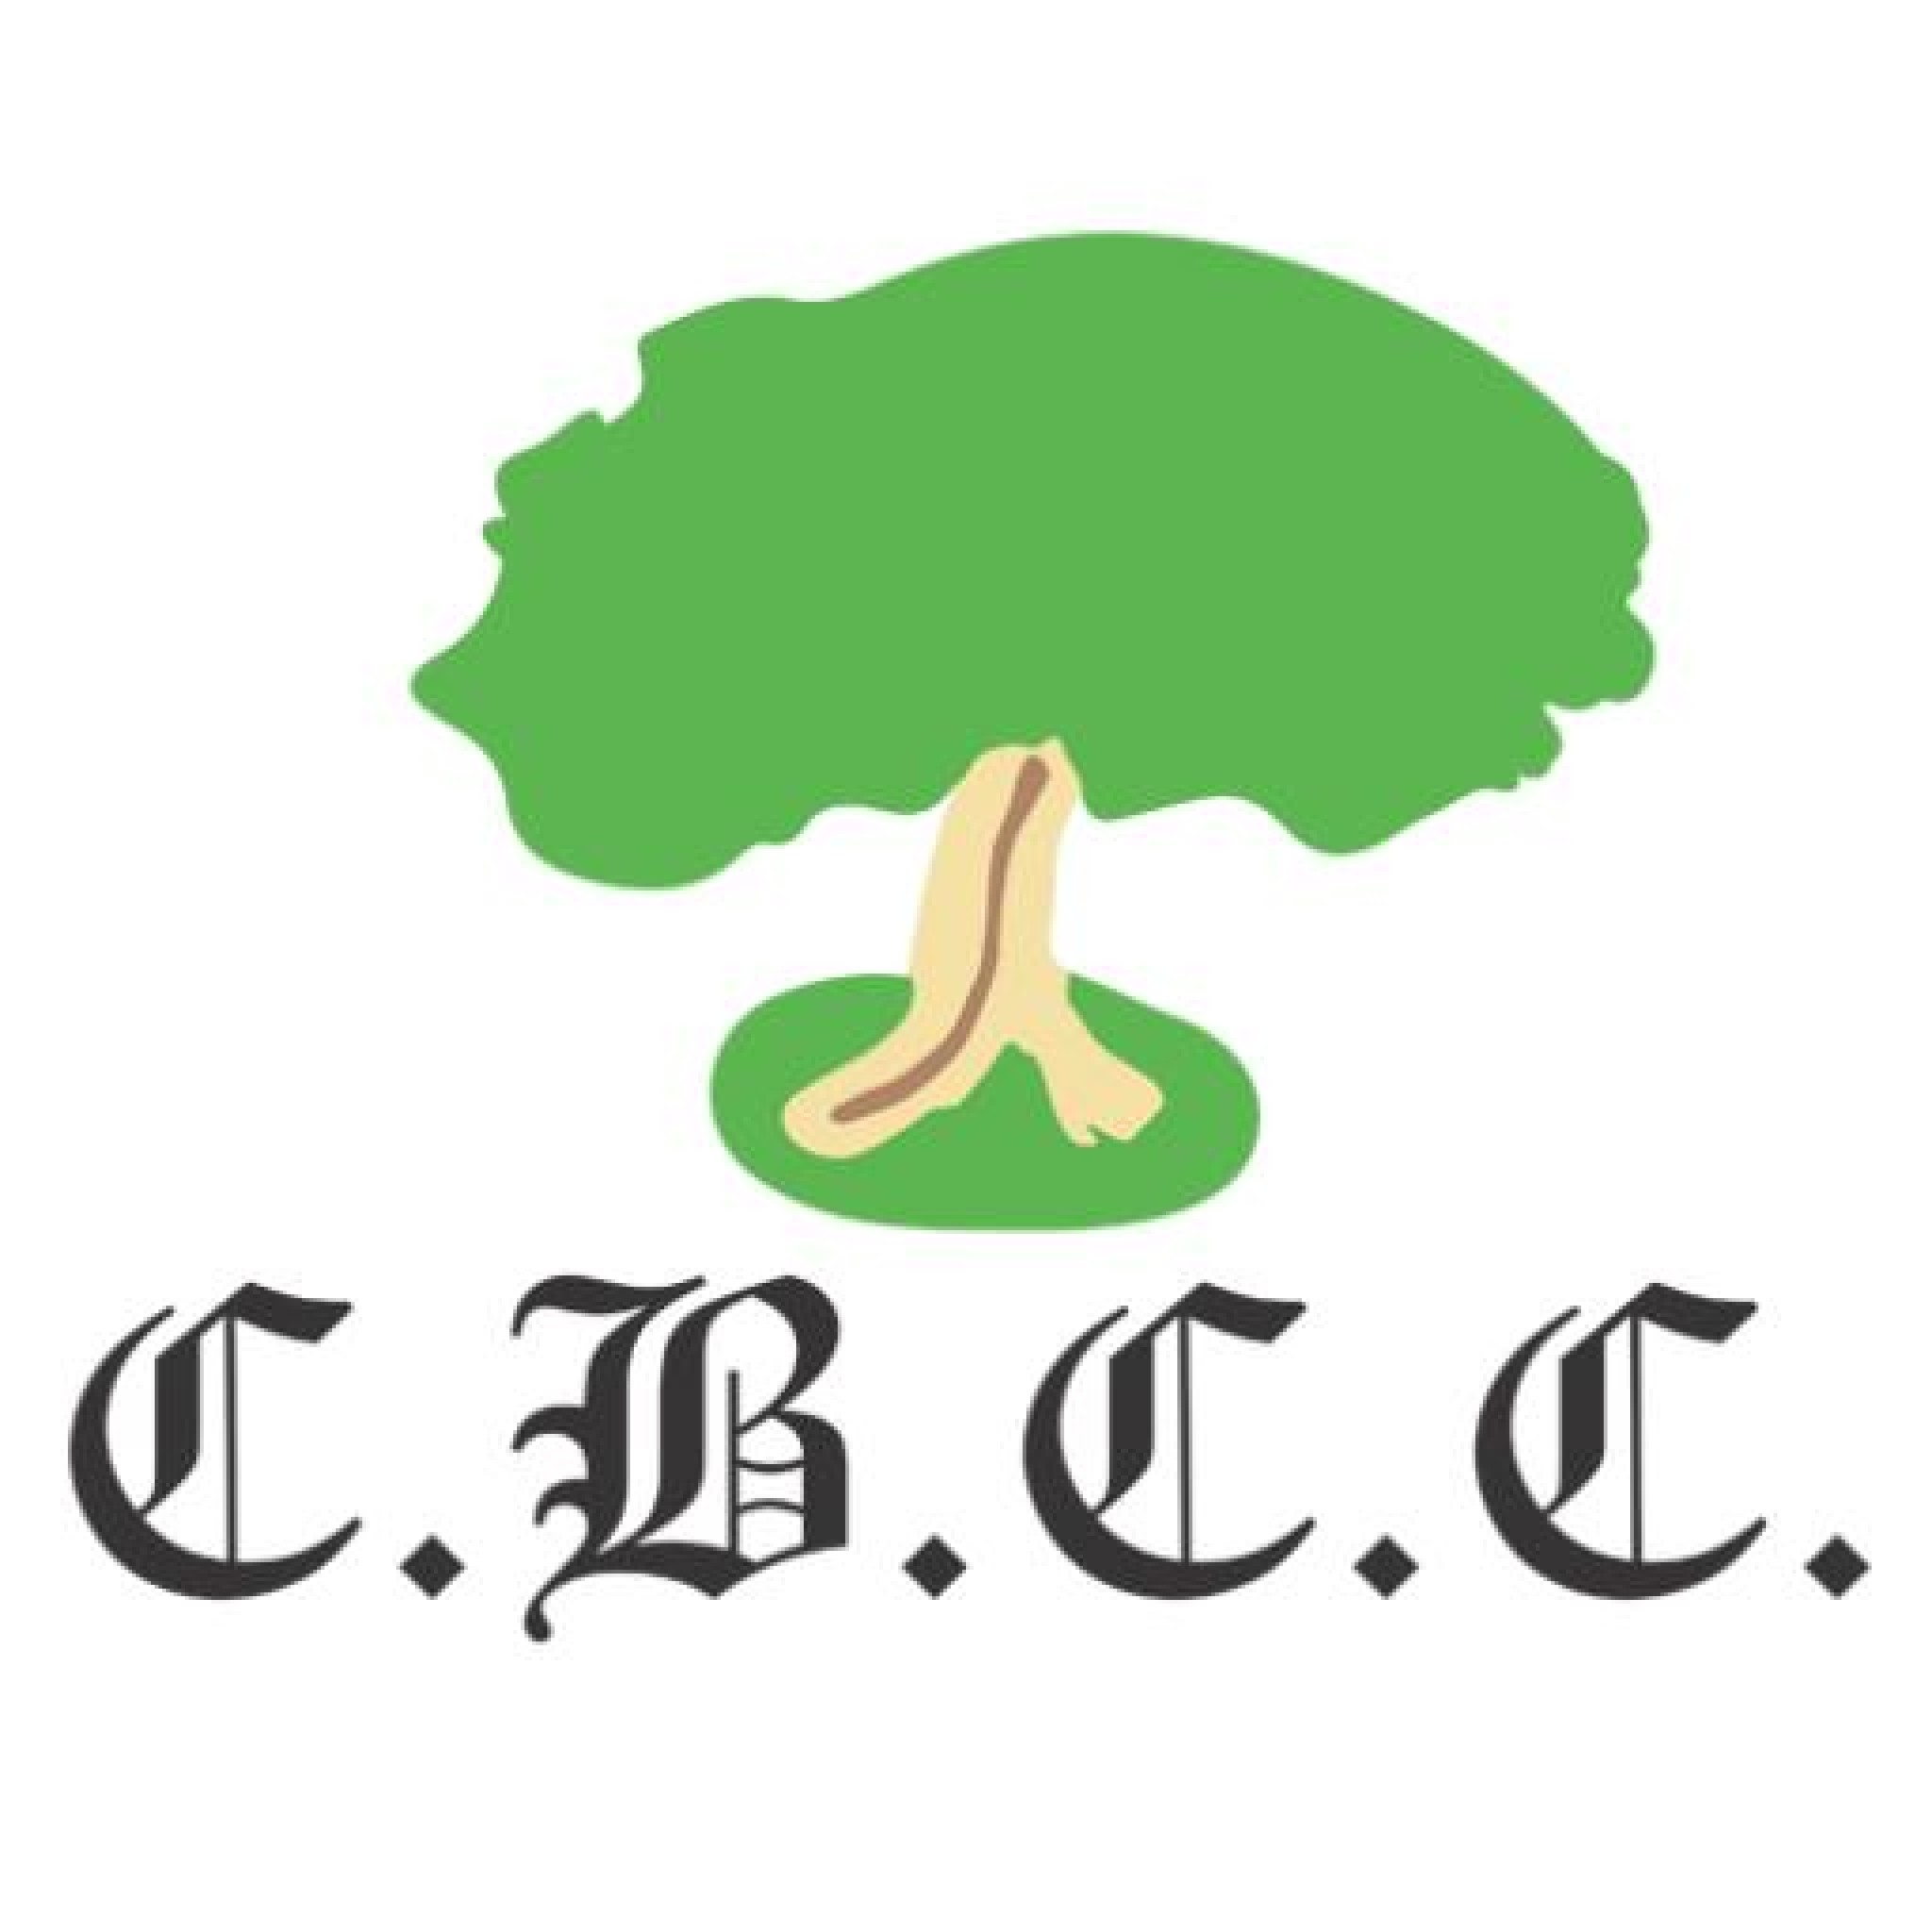 C.B.C.C.jpg